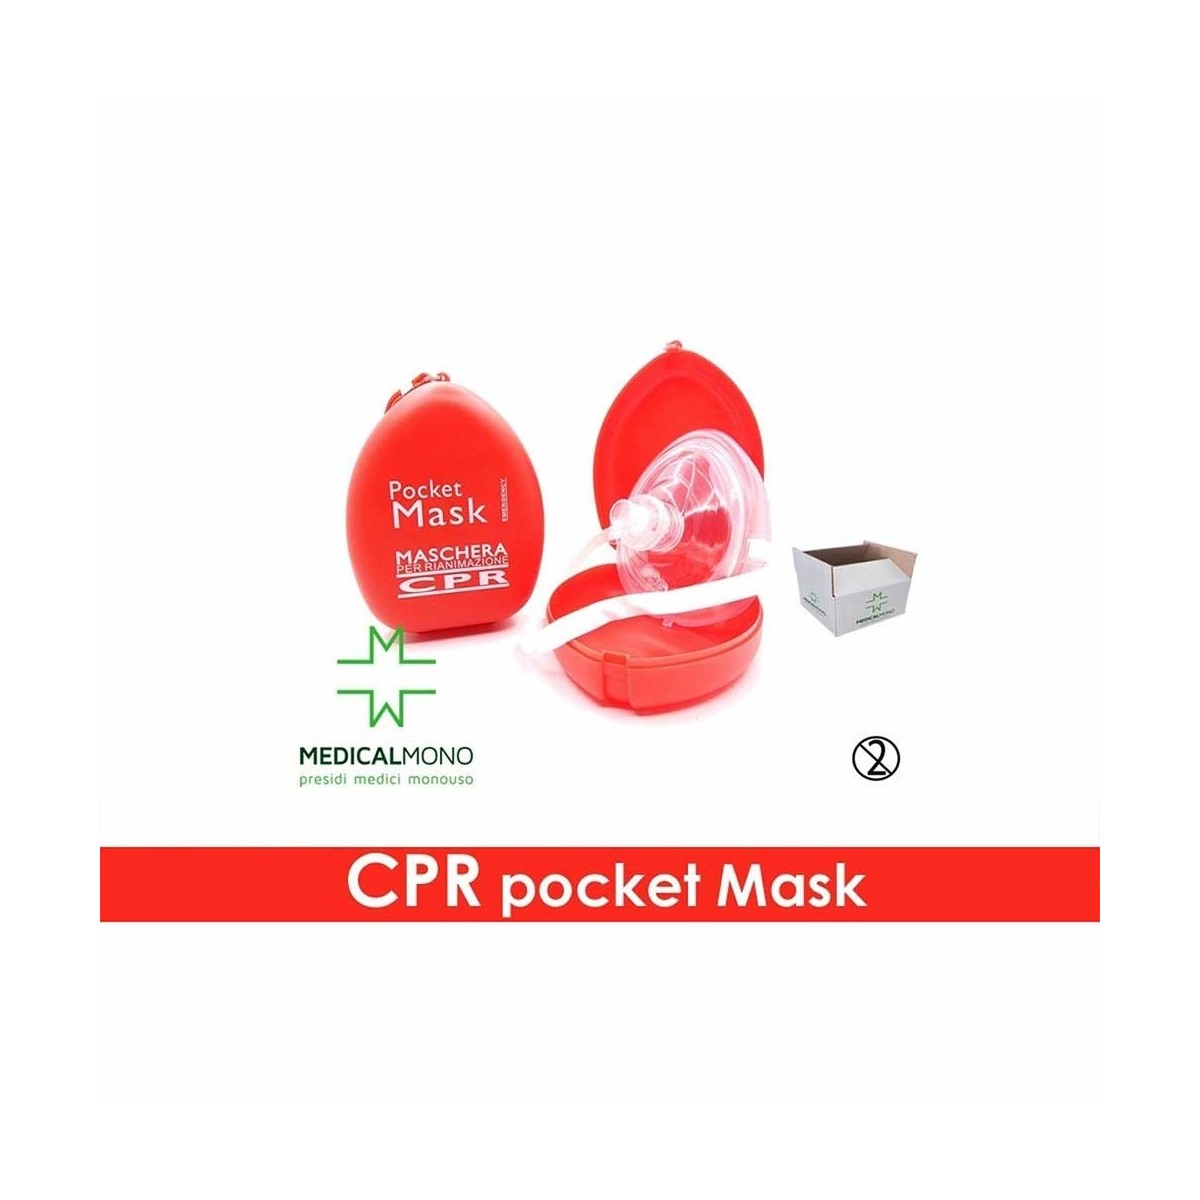 CPR Pocket Mask - Maschera per rianimazione con valvola